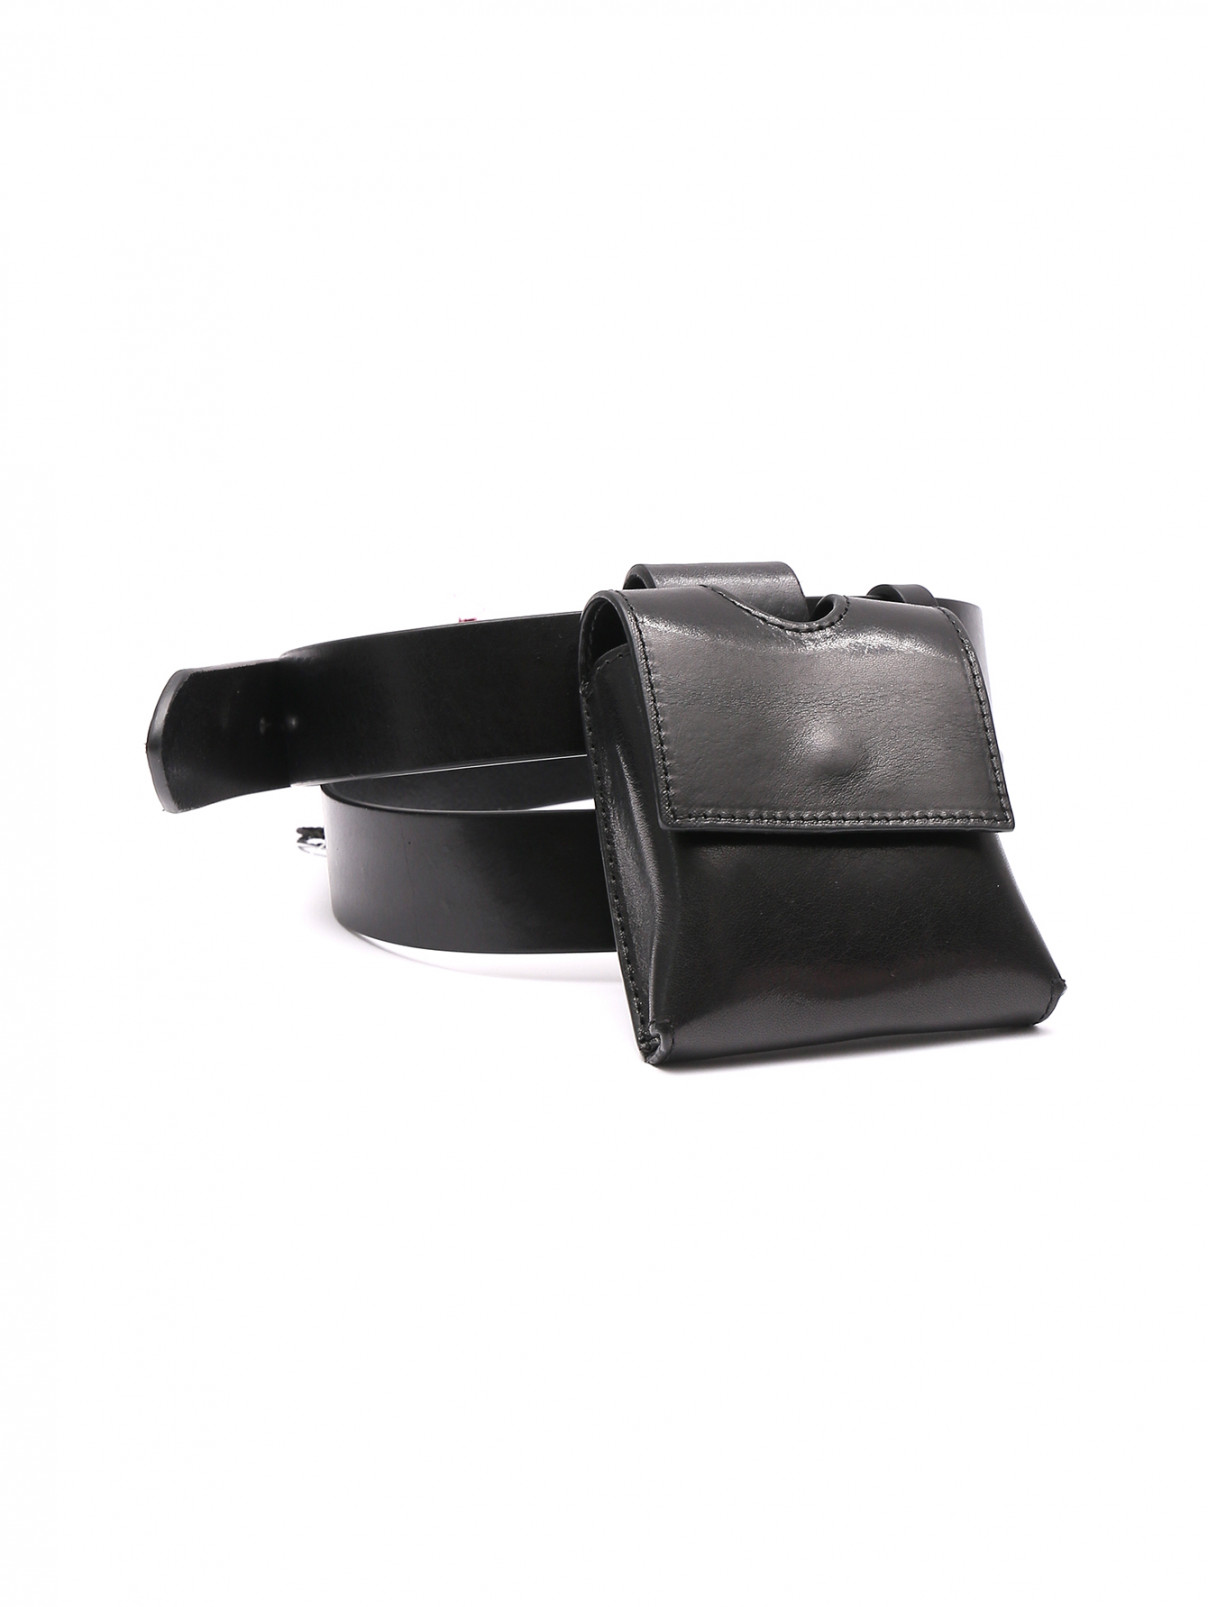 Ремень из гладкой кожи с мини-сумкой Weekend Max Mara  –  Общий вид  – Цвет:  Черный